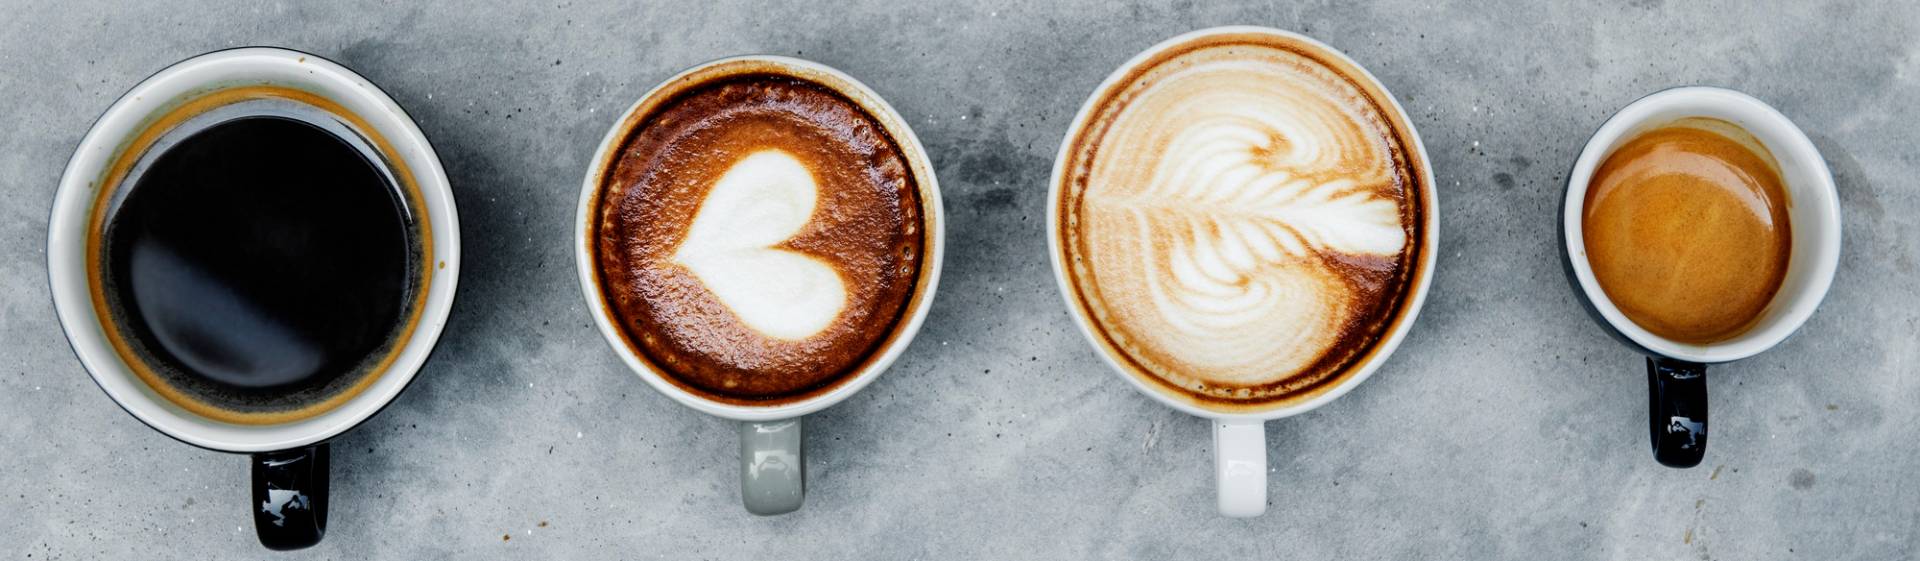 9 Consejos para dominar el arte del buen café en casa